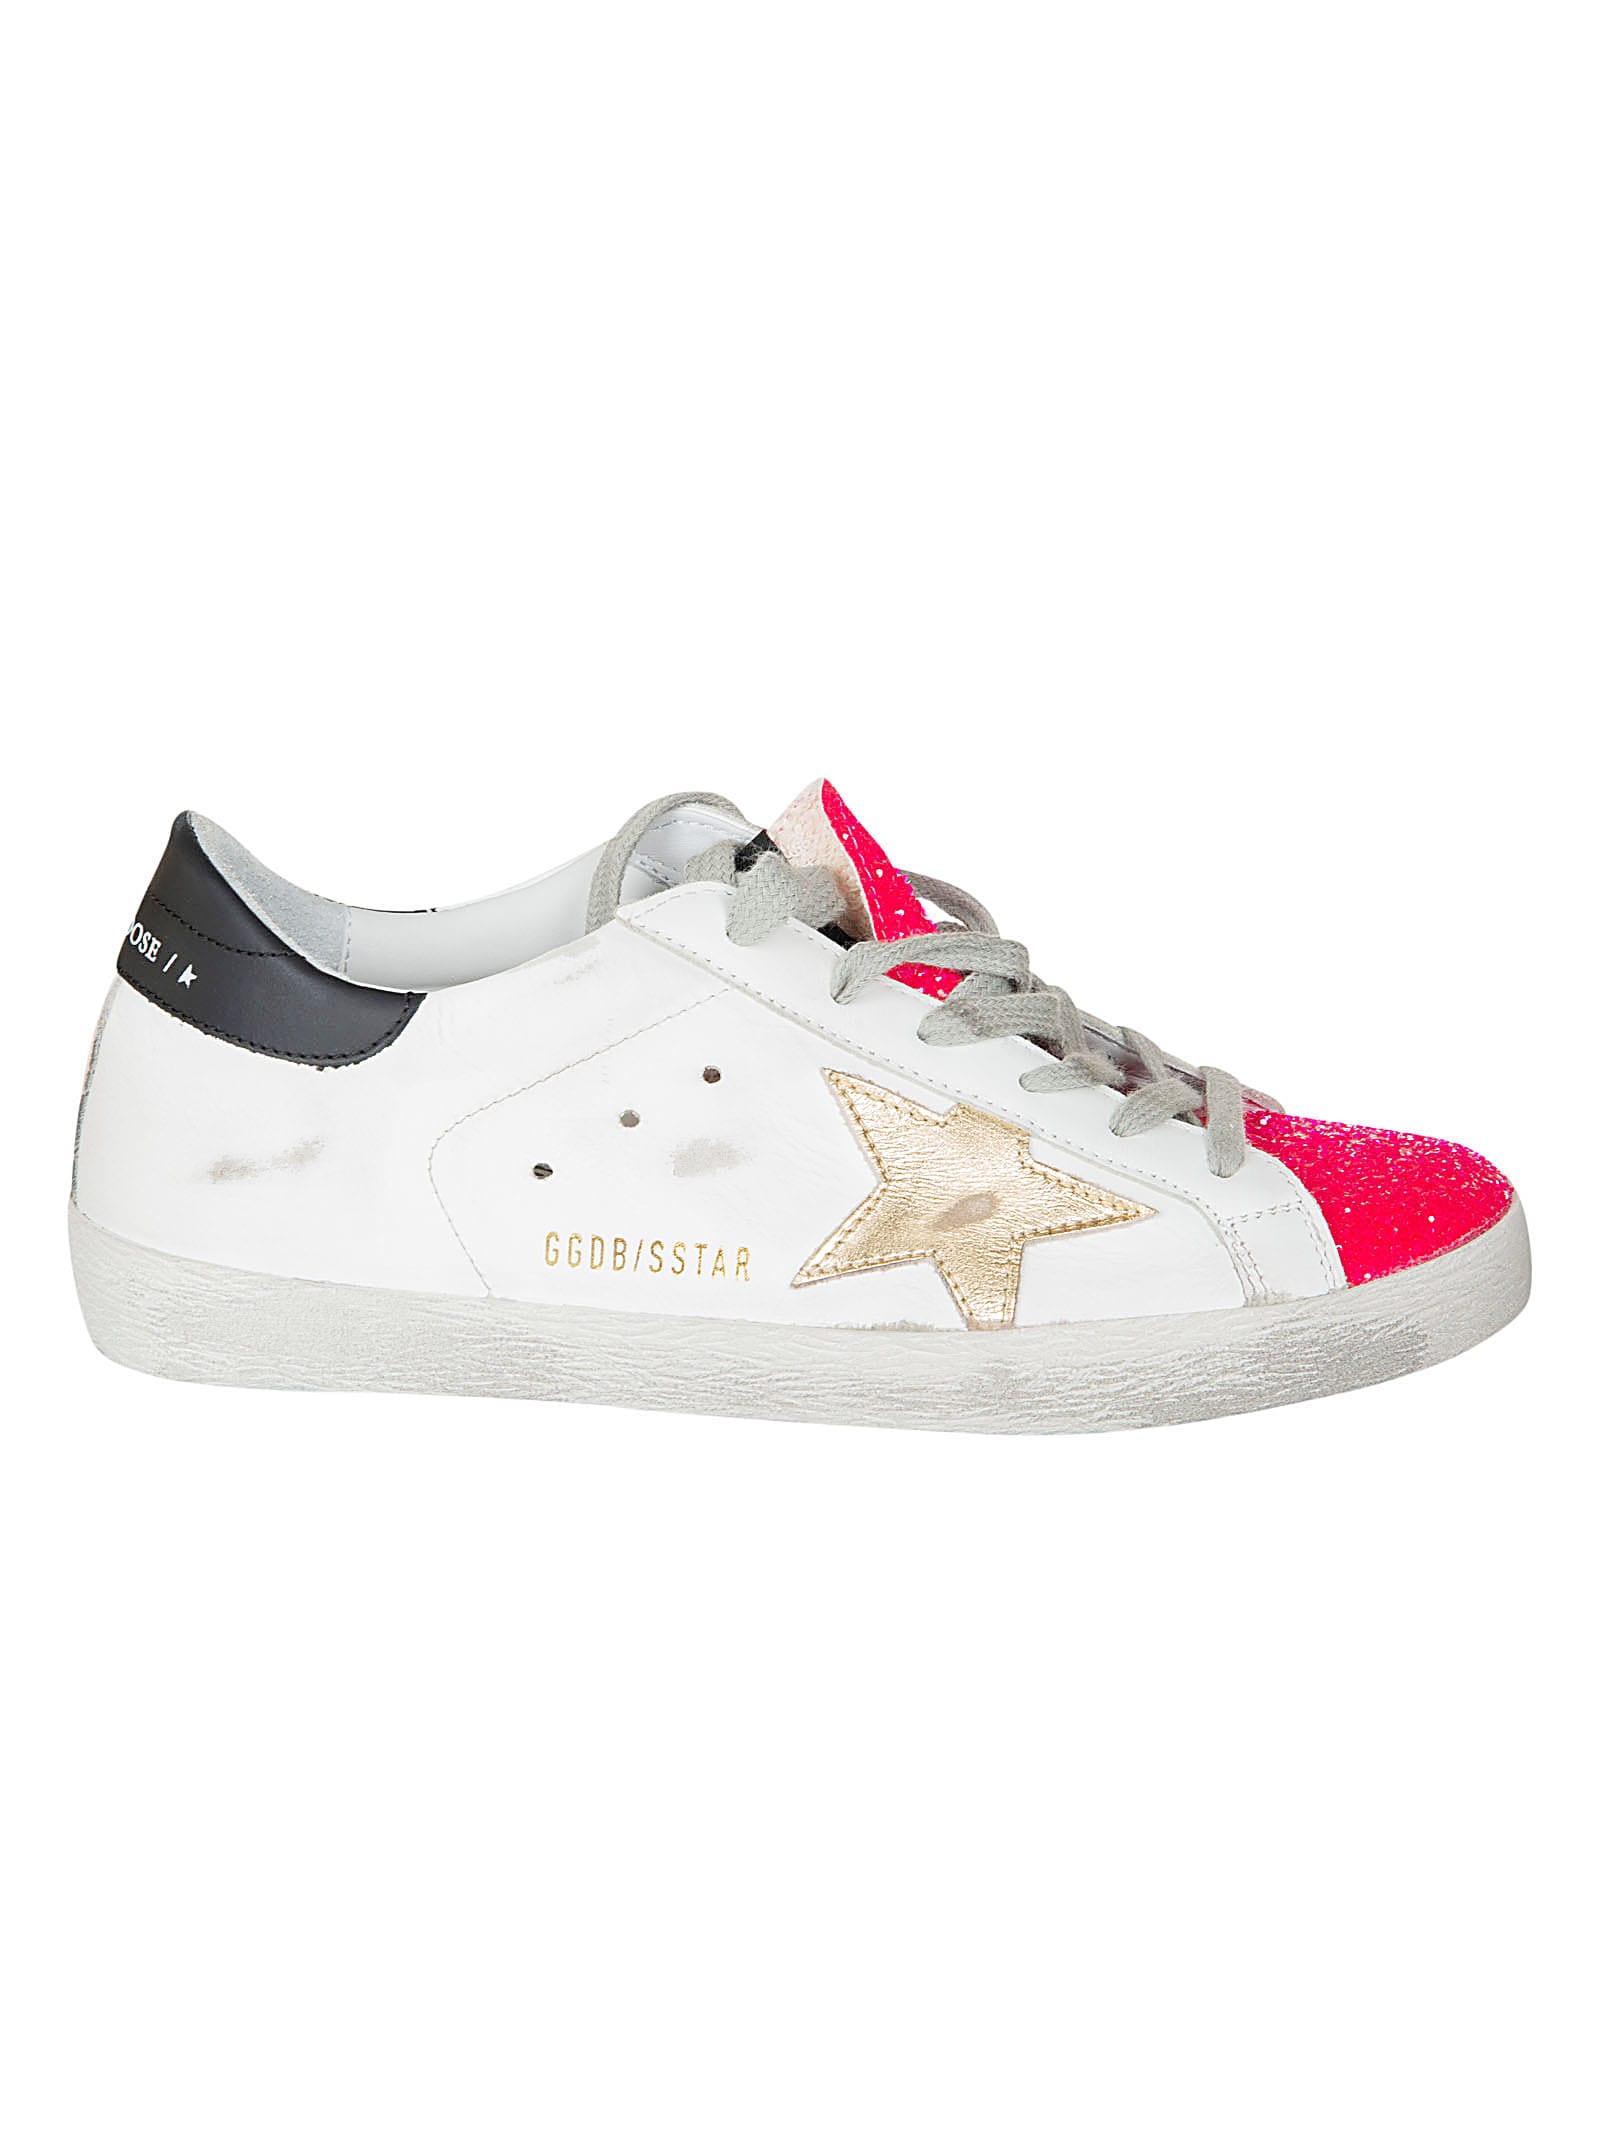 golden goose superstar sneakers pink